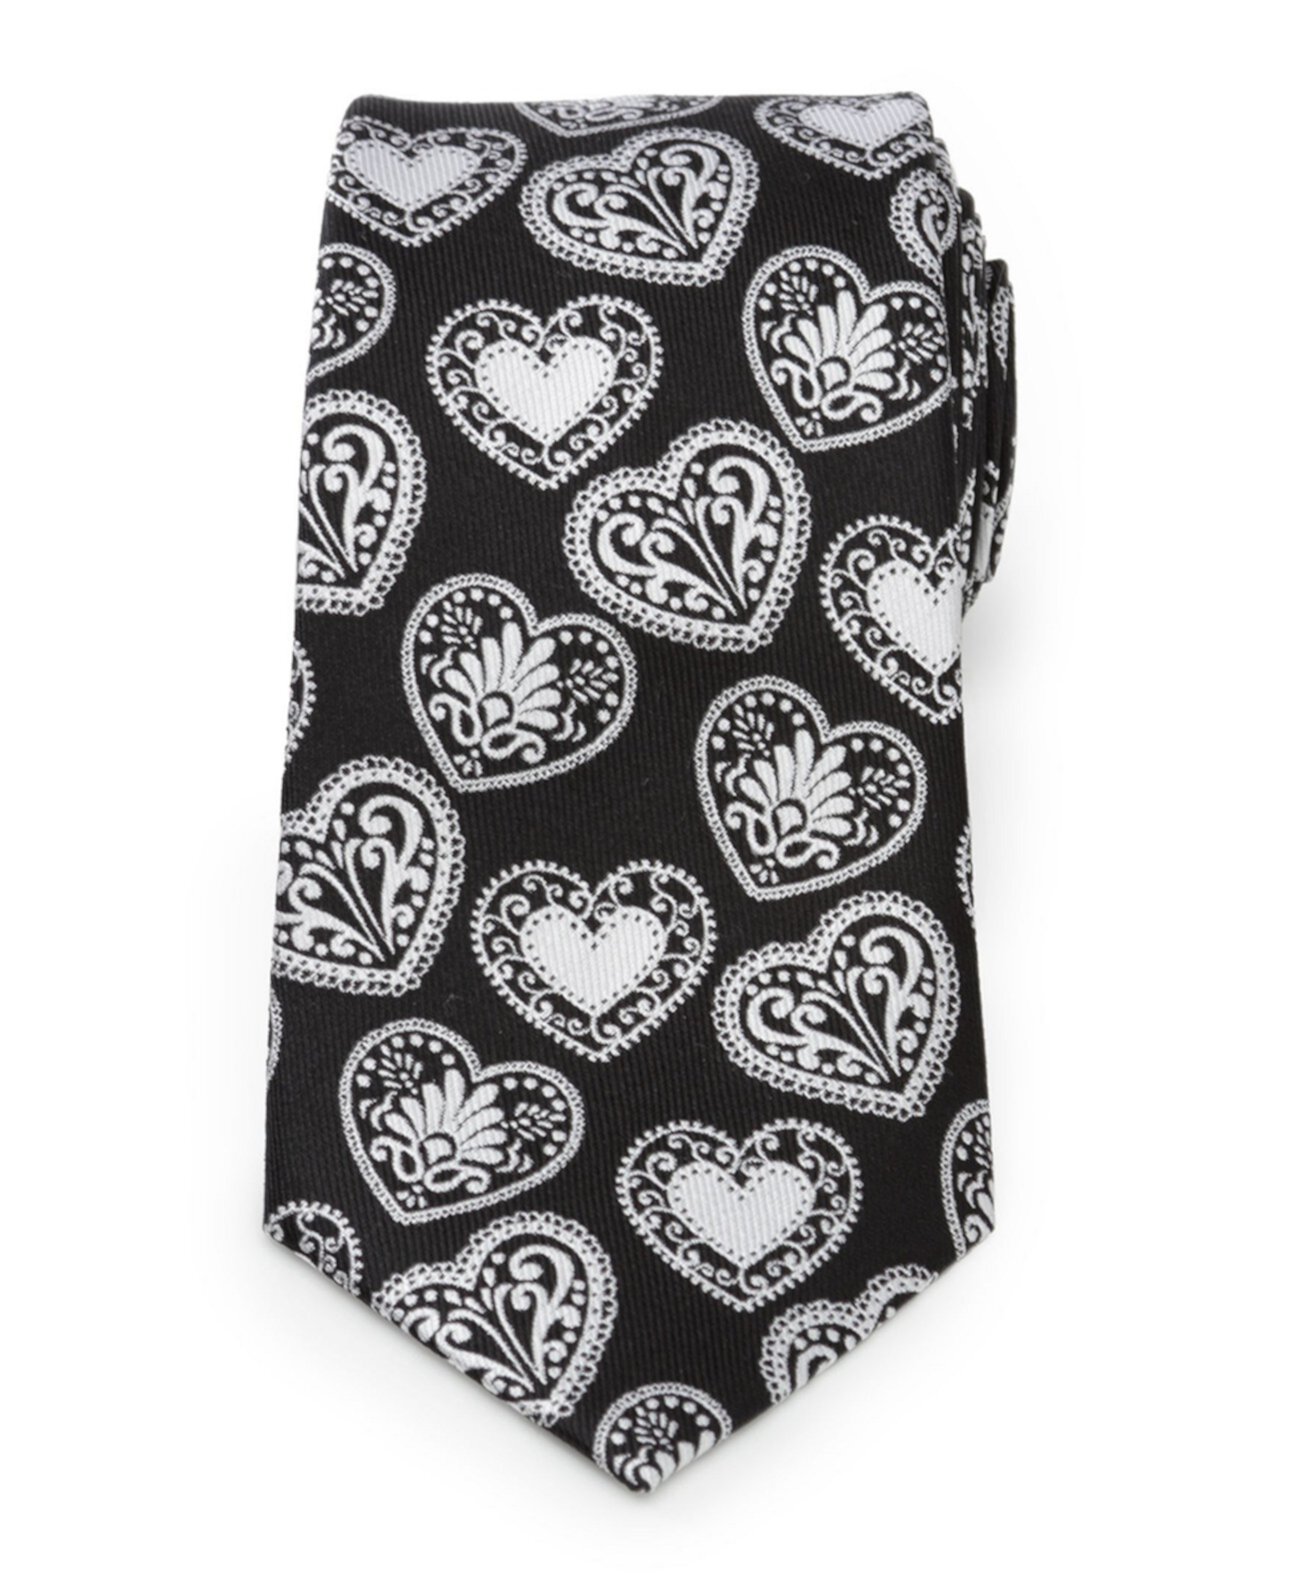 Мужской галстук-сердце с пейсли Cufflinks, Inc.